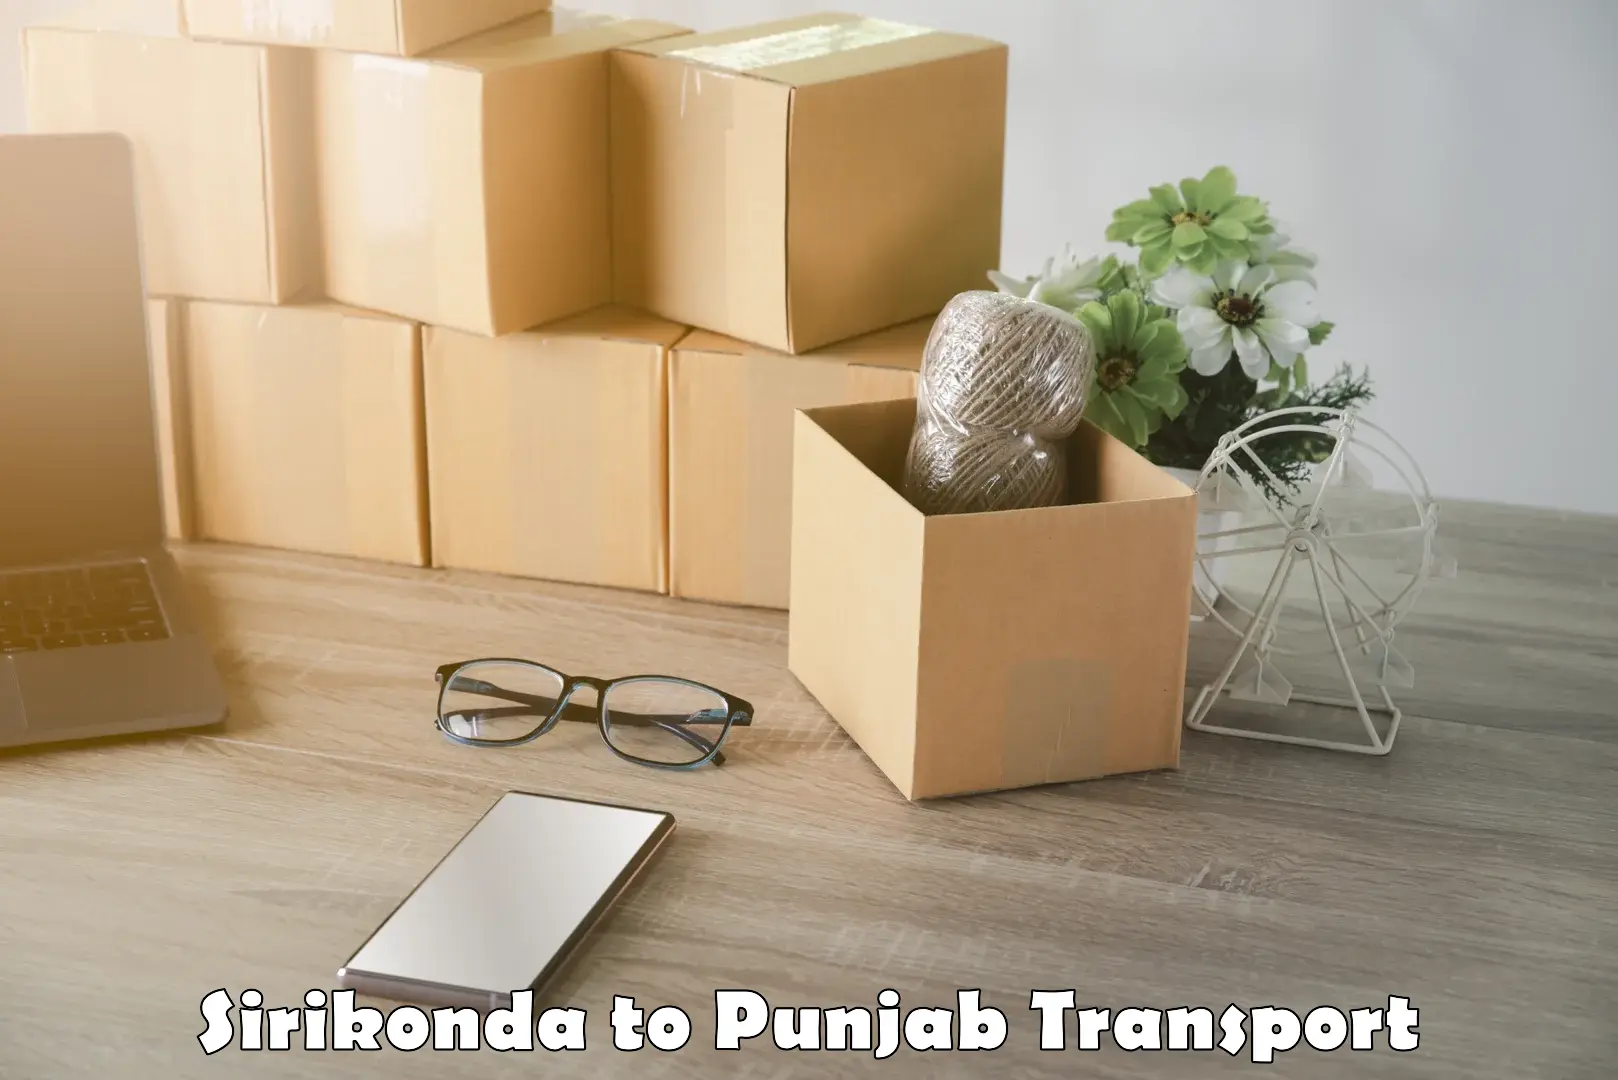 Land transport services in Sirikonda to Punjab